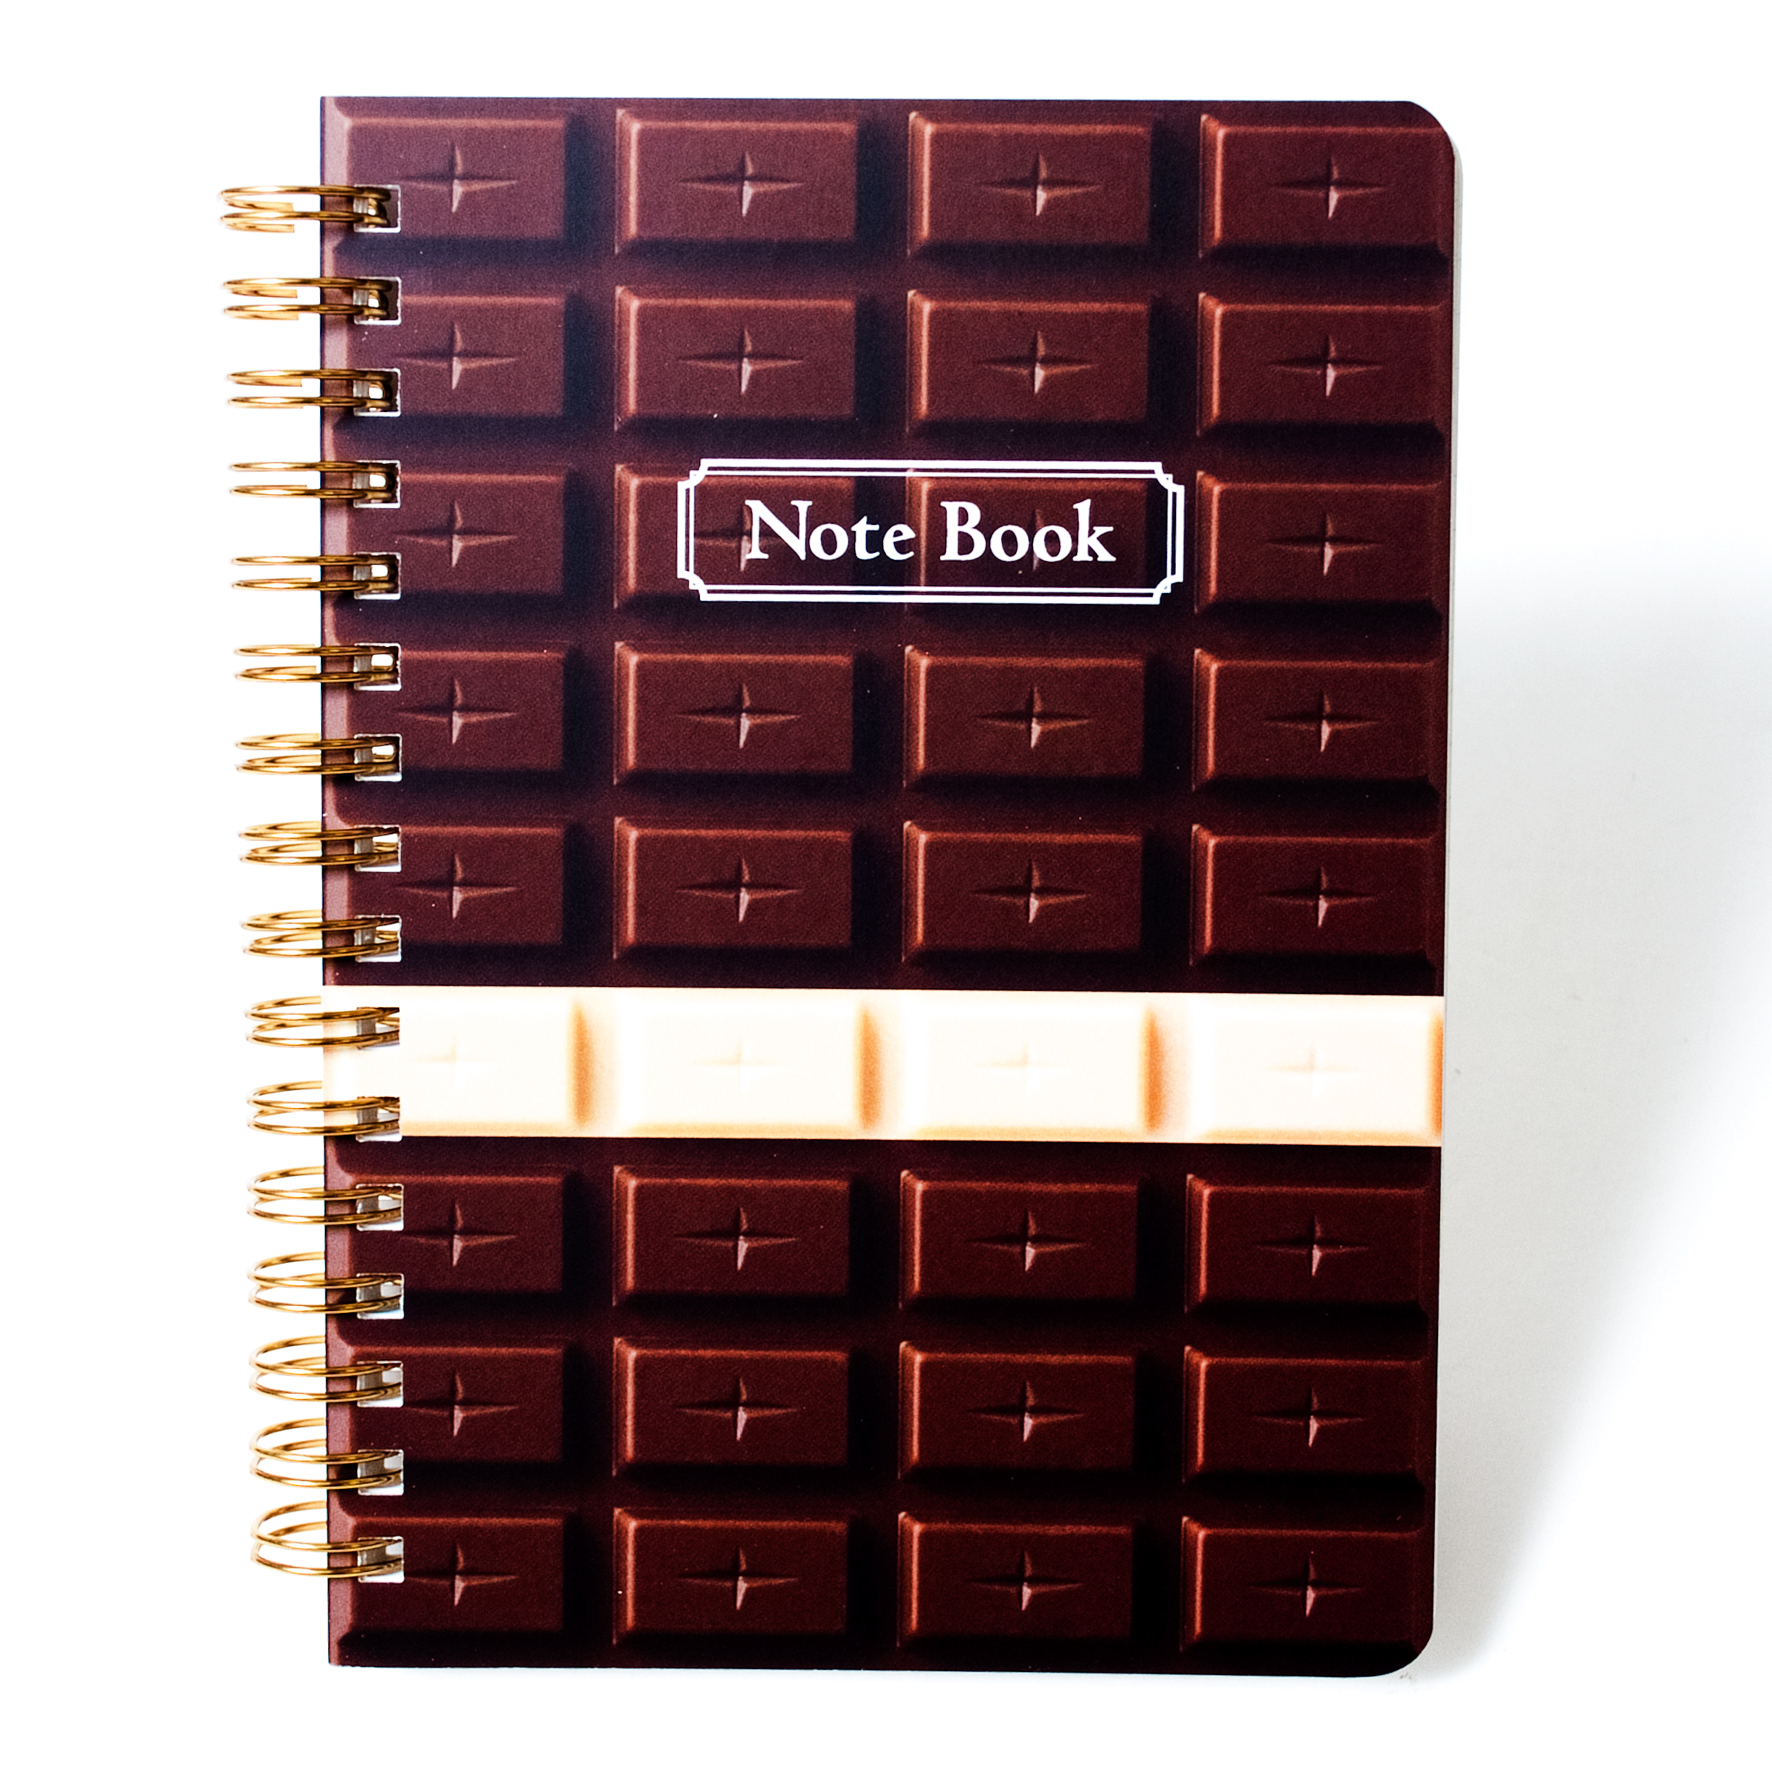 「チョコレートデザイン株式会社 様」製作のオリジナルノート